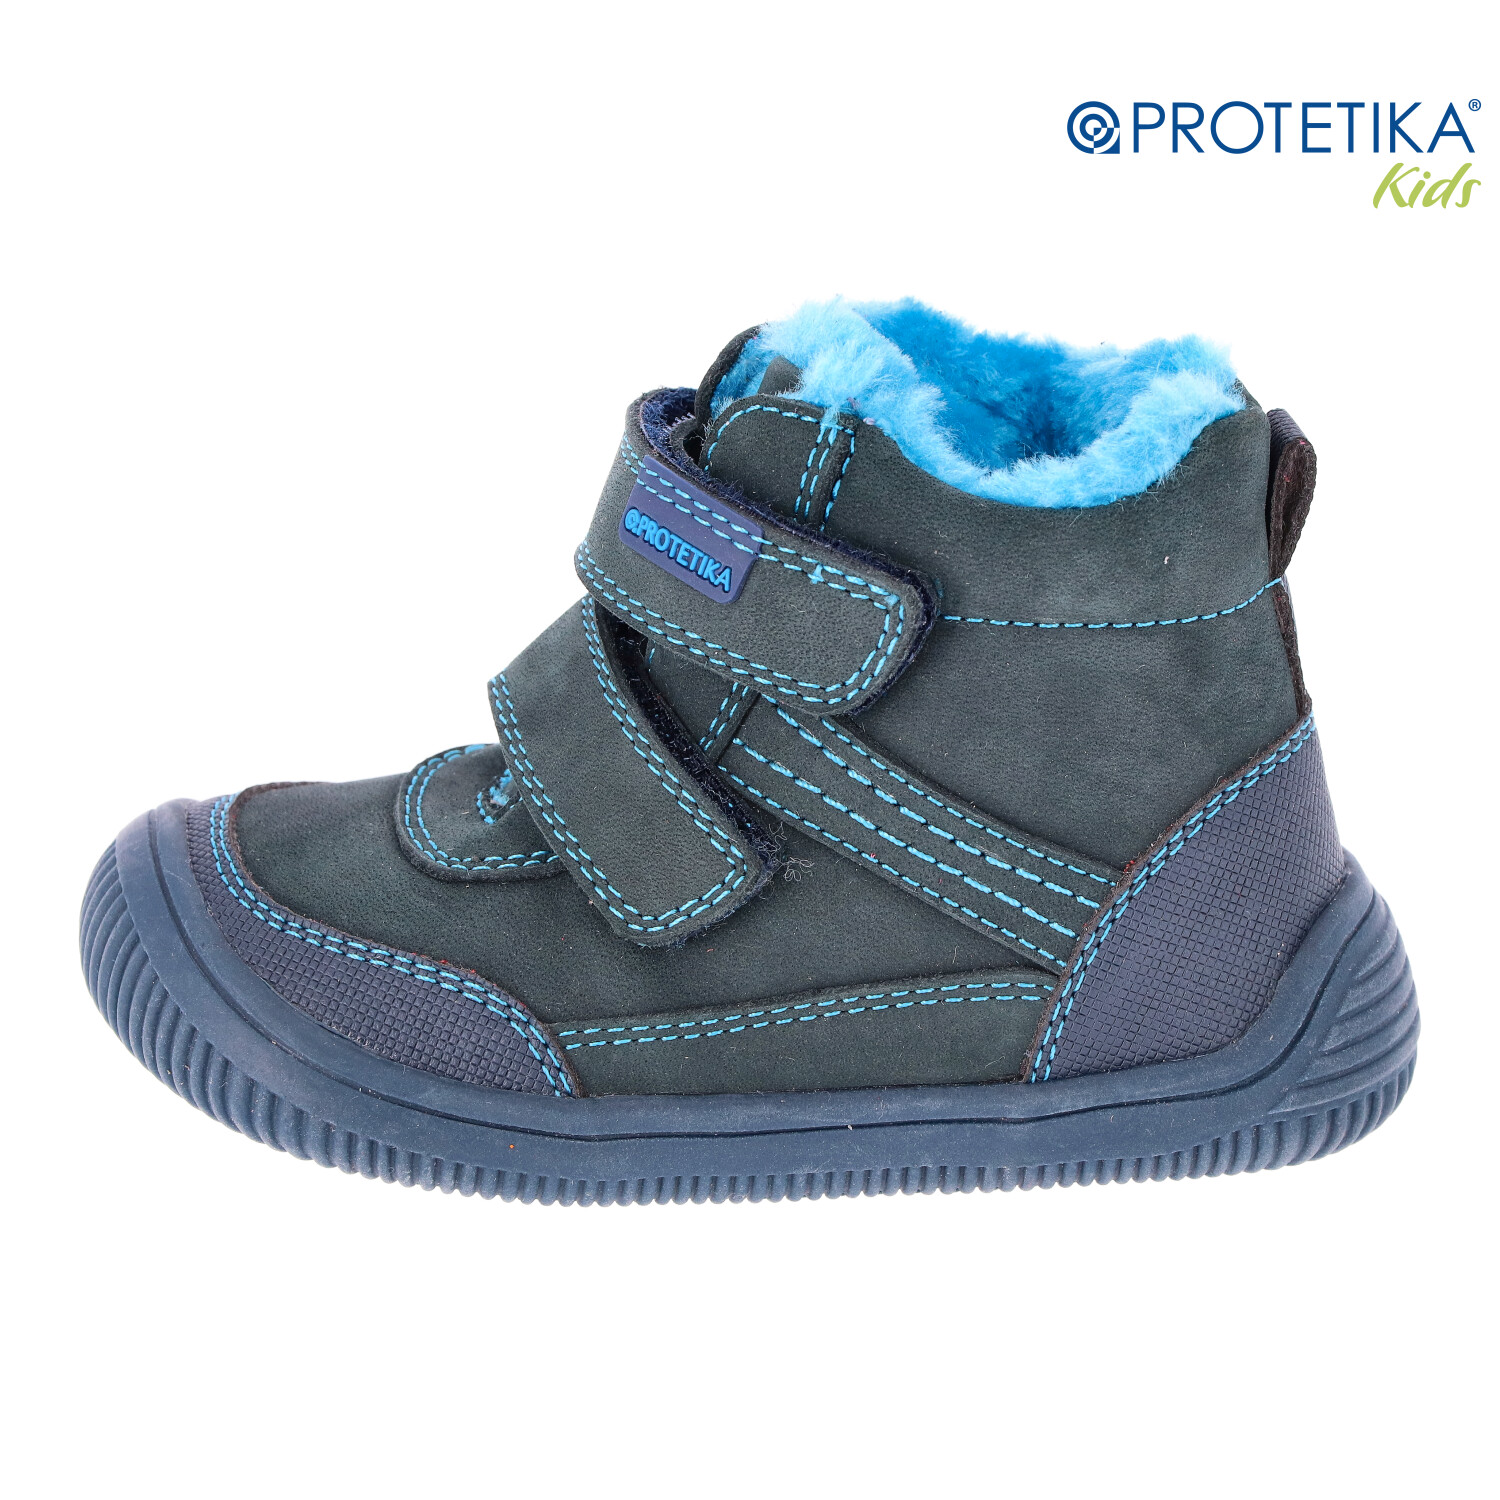 Protetika - zimné barefootové topánky TYREL navy - zateplené kožušinkou